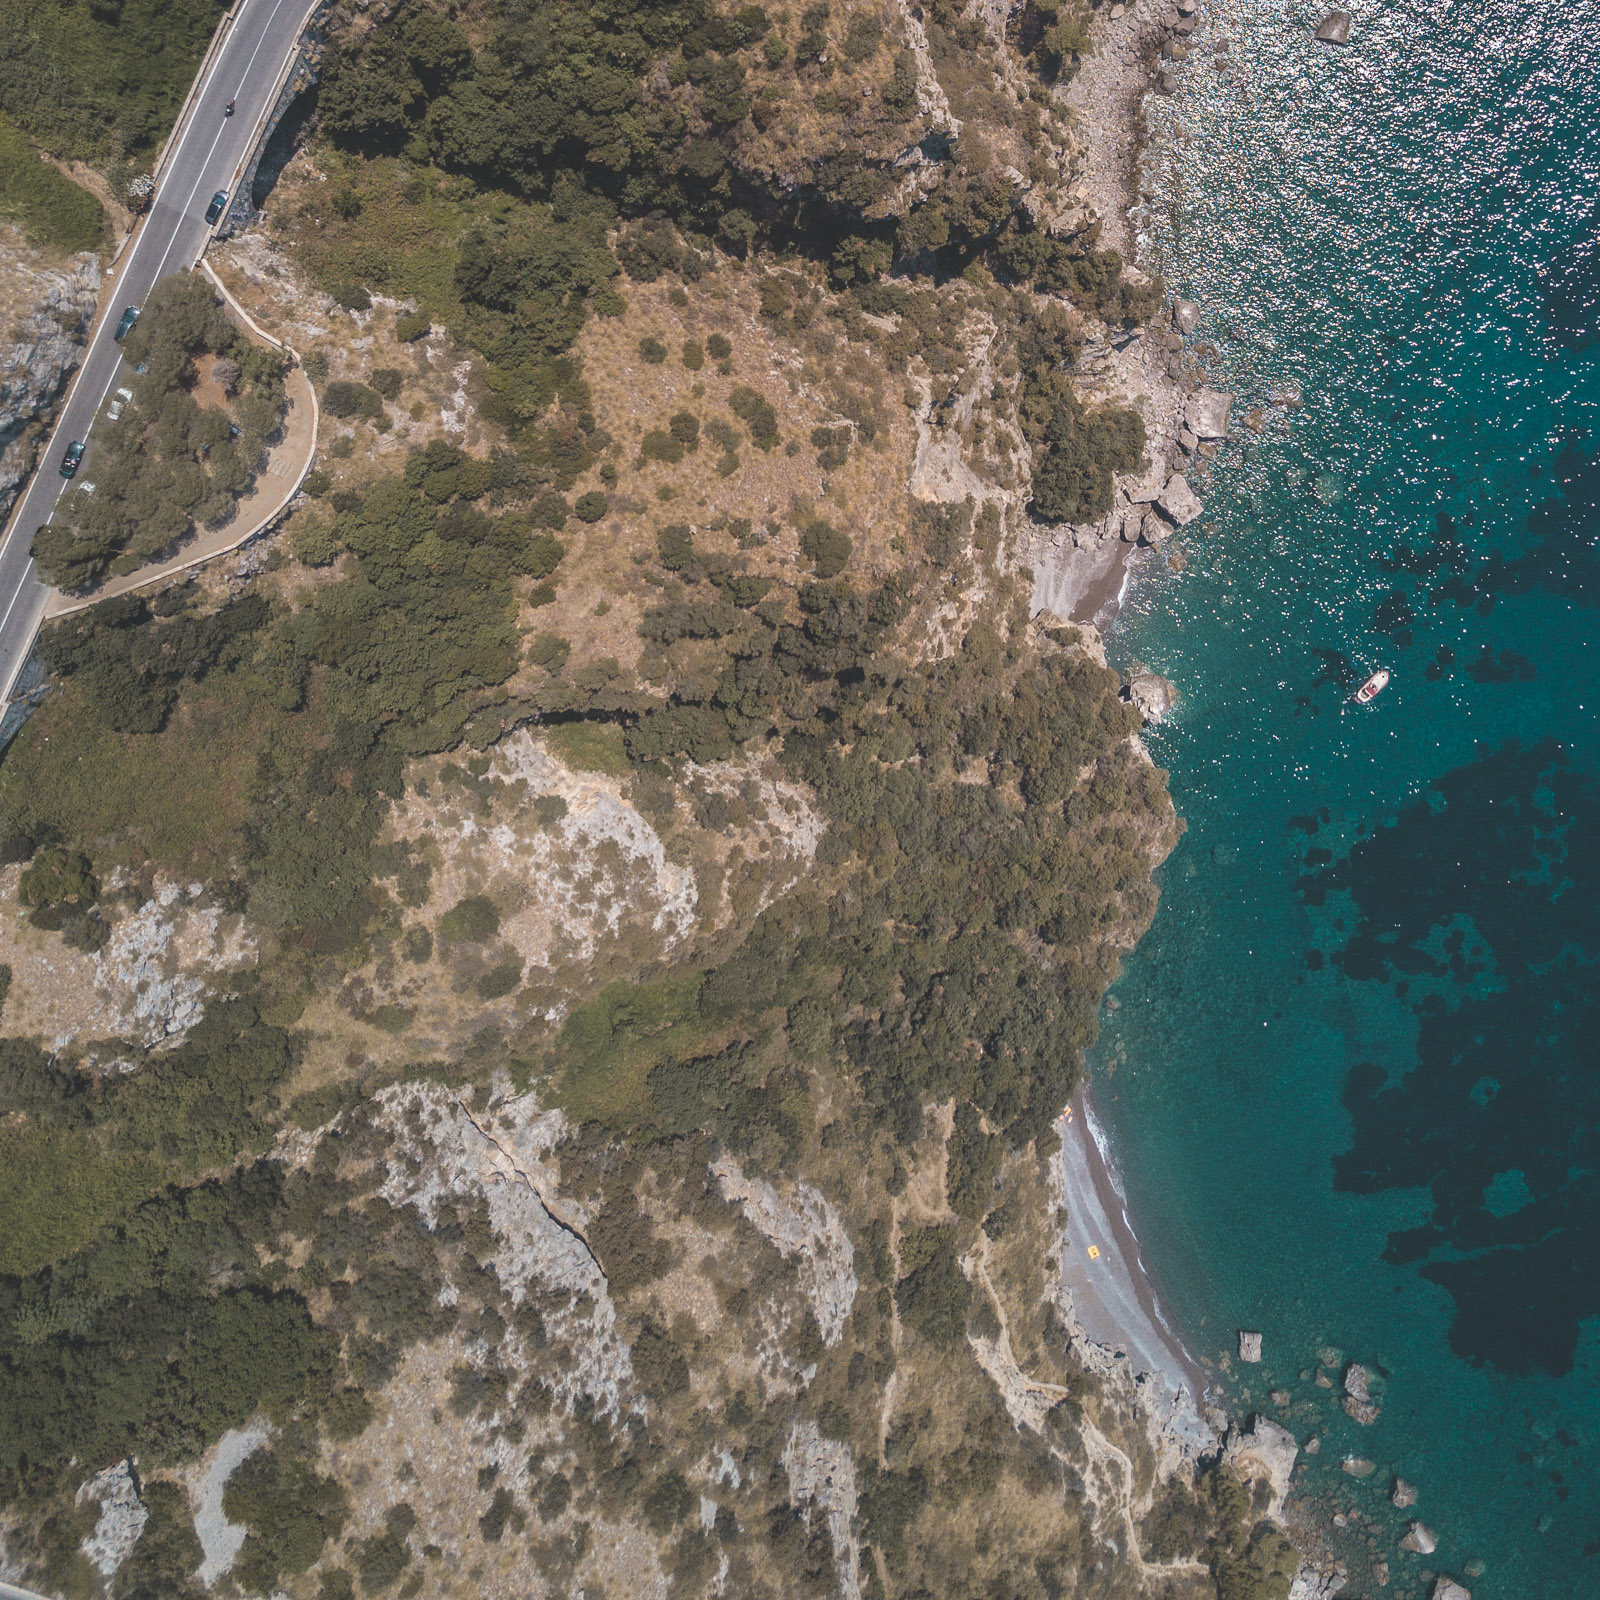 amalfi coast drone